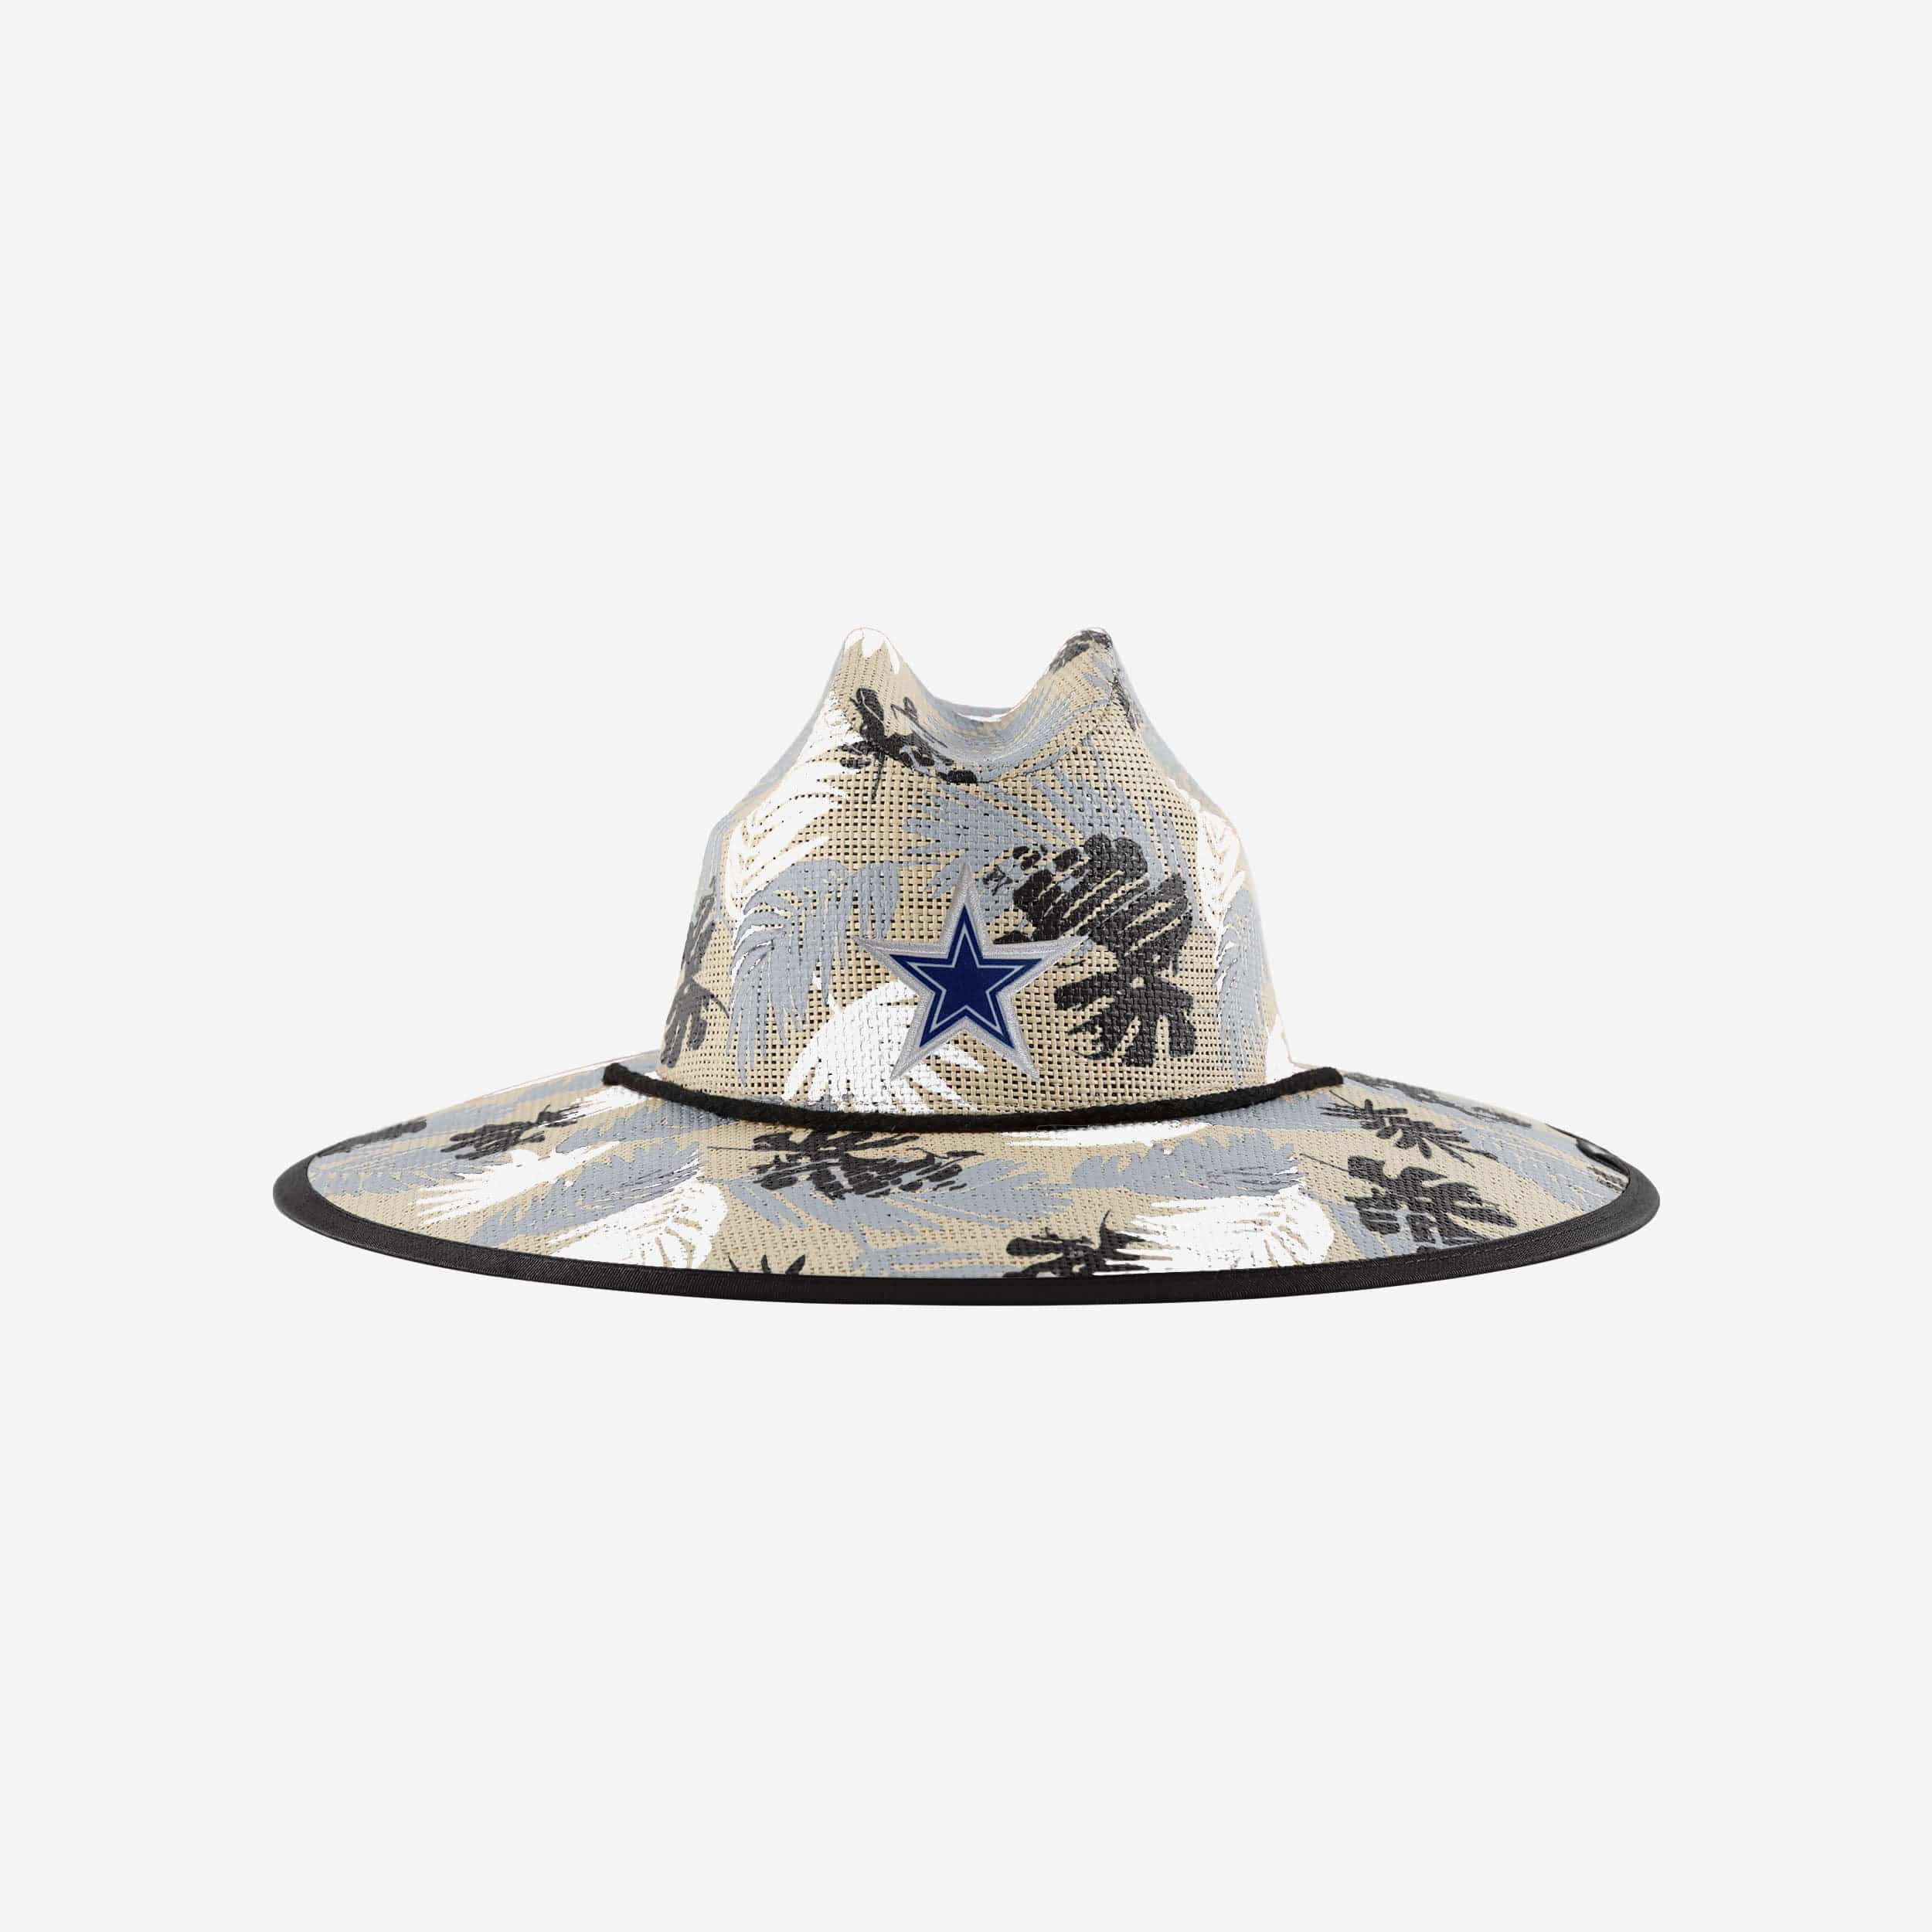 FOCO Dallas Cowboys NFL Floral Printed Straw Hat, Straw